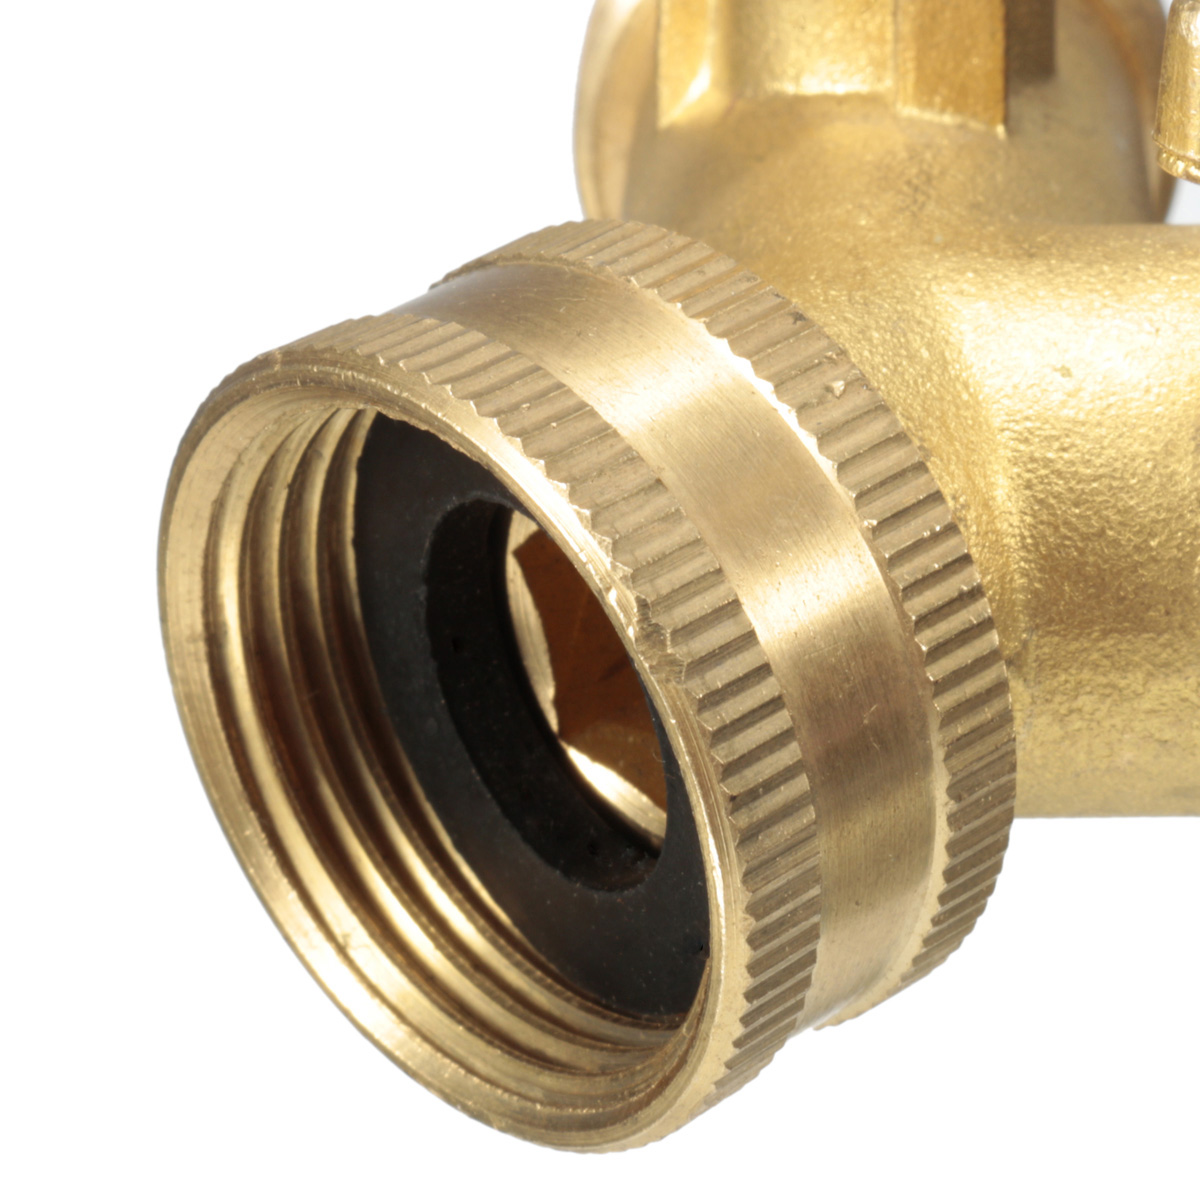 EUUS-Standard-34-quot-Brass-Garden-Irrigation-Hose-Splitter-Faucet-Manifold-2-Way-Y-Shape-Adapter-Pi-1742643